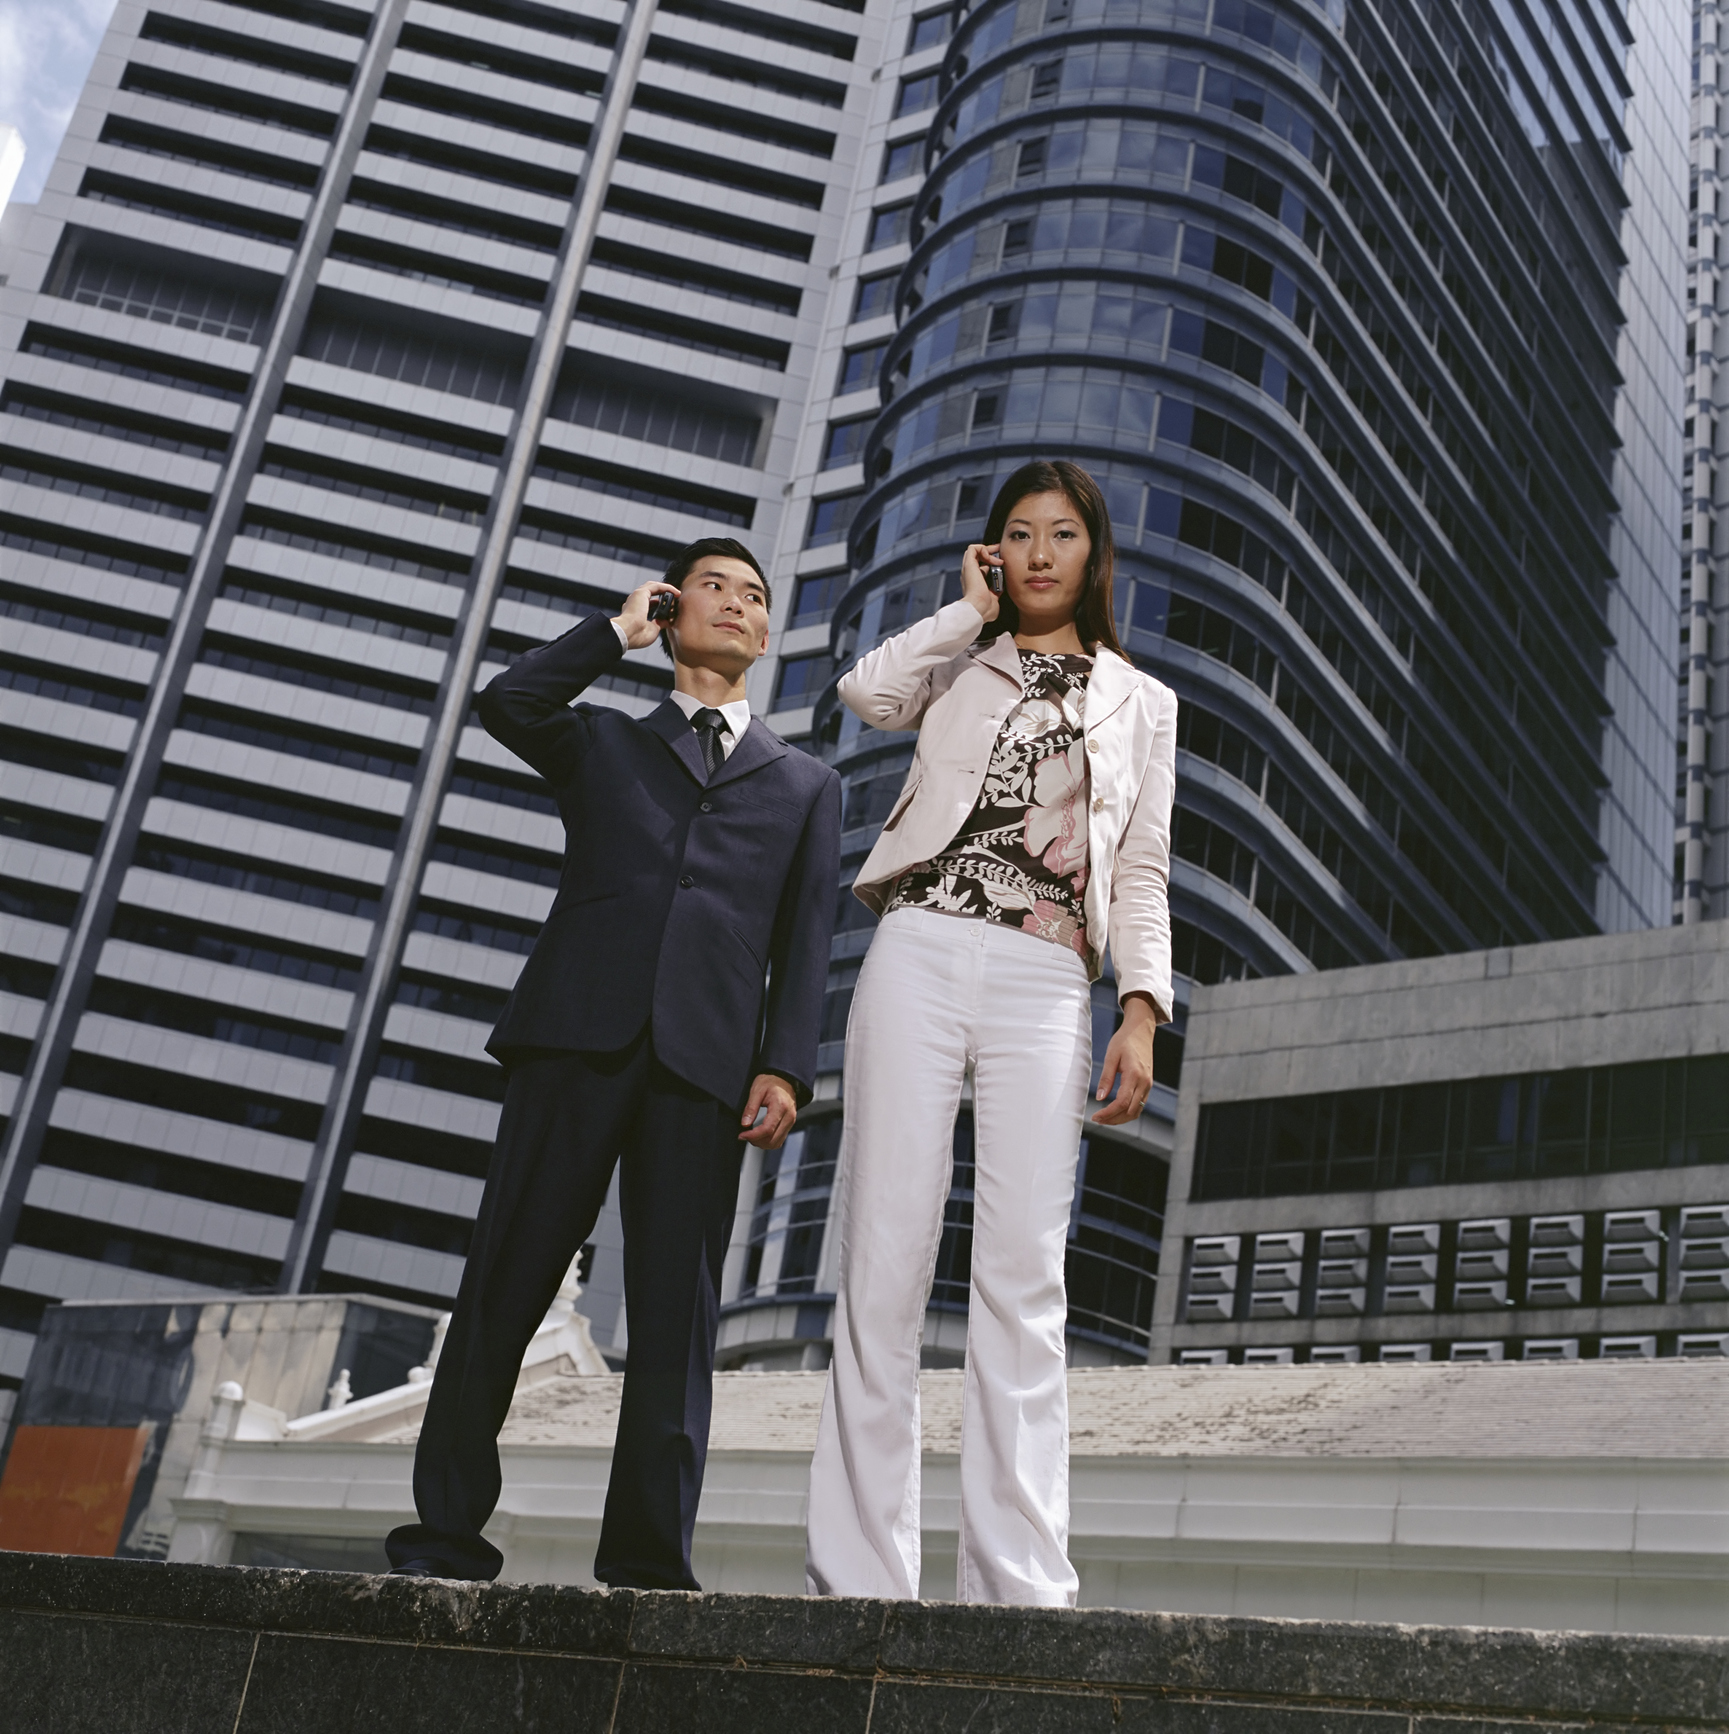 Žena a muž telefonují z mobilů, v pozadí výškové budovy.